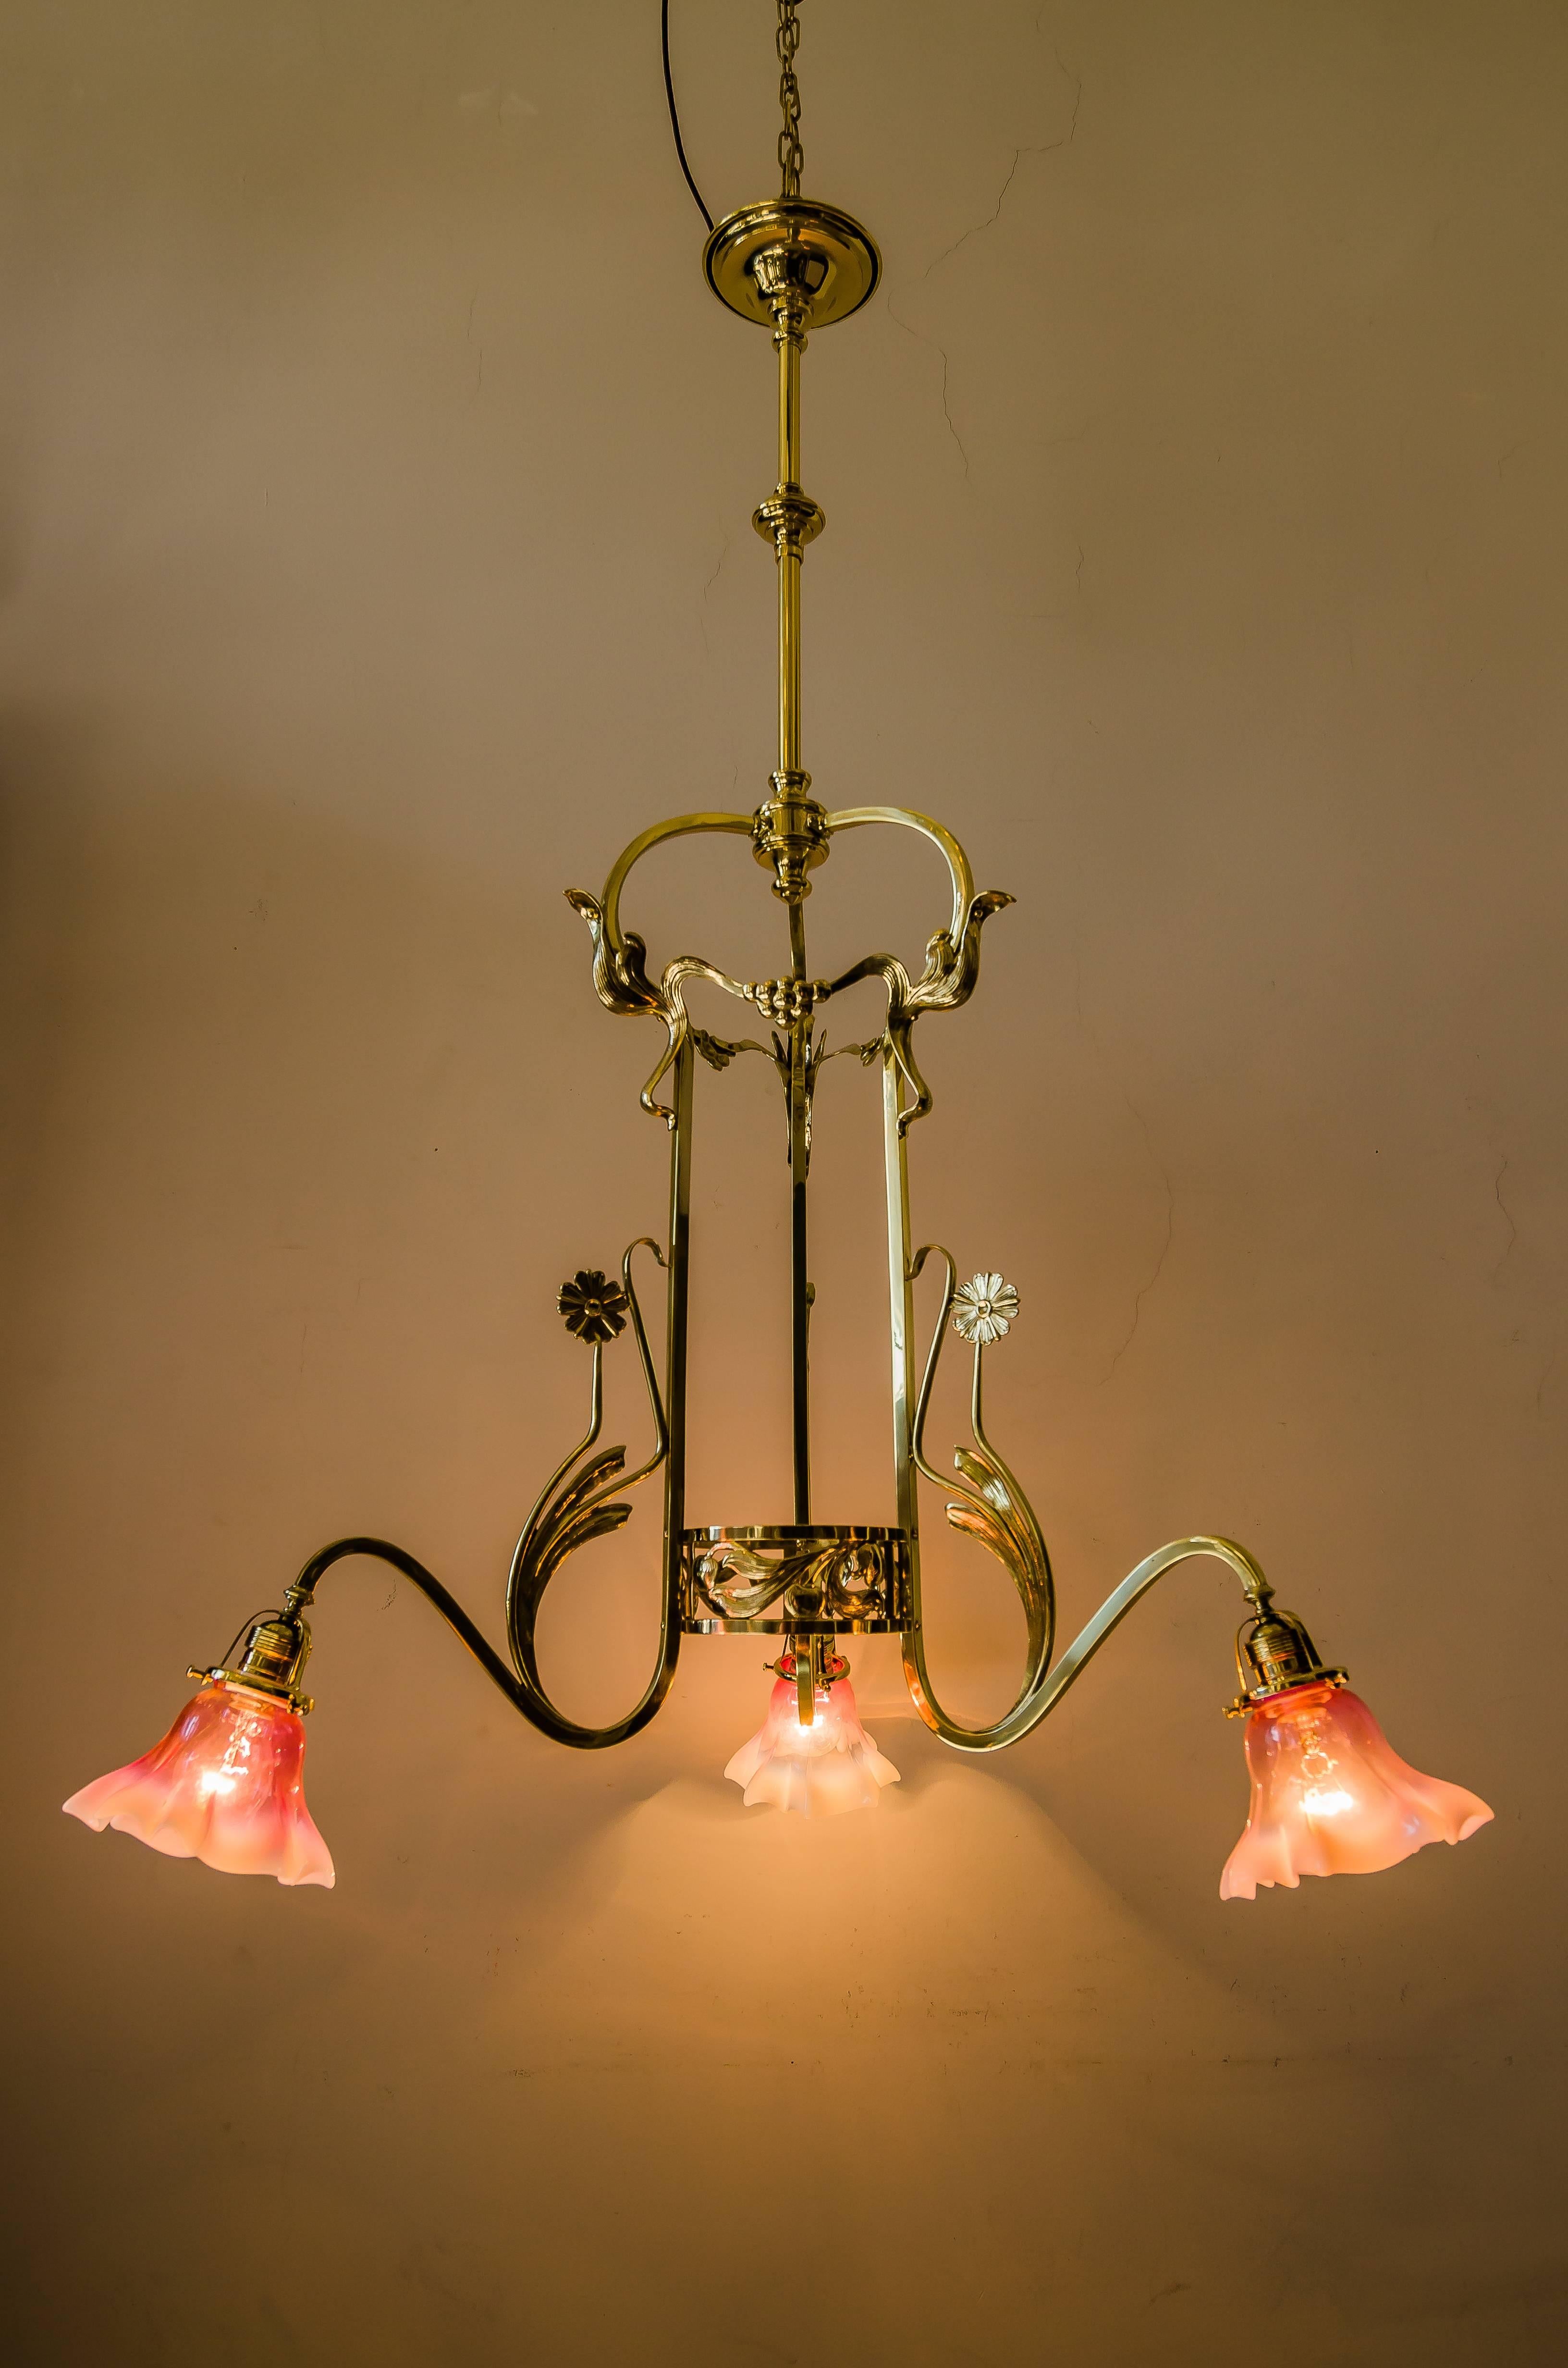 Jugendstil chandelier with opaline glass shades
polished and stove enameled.